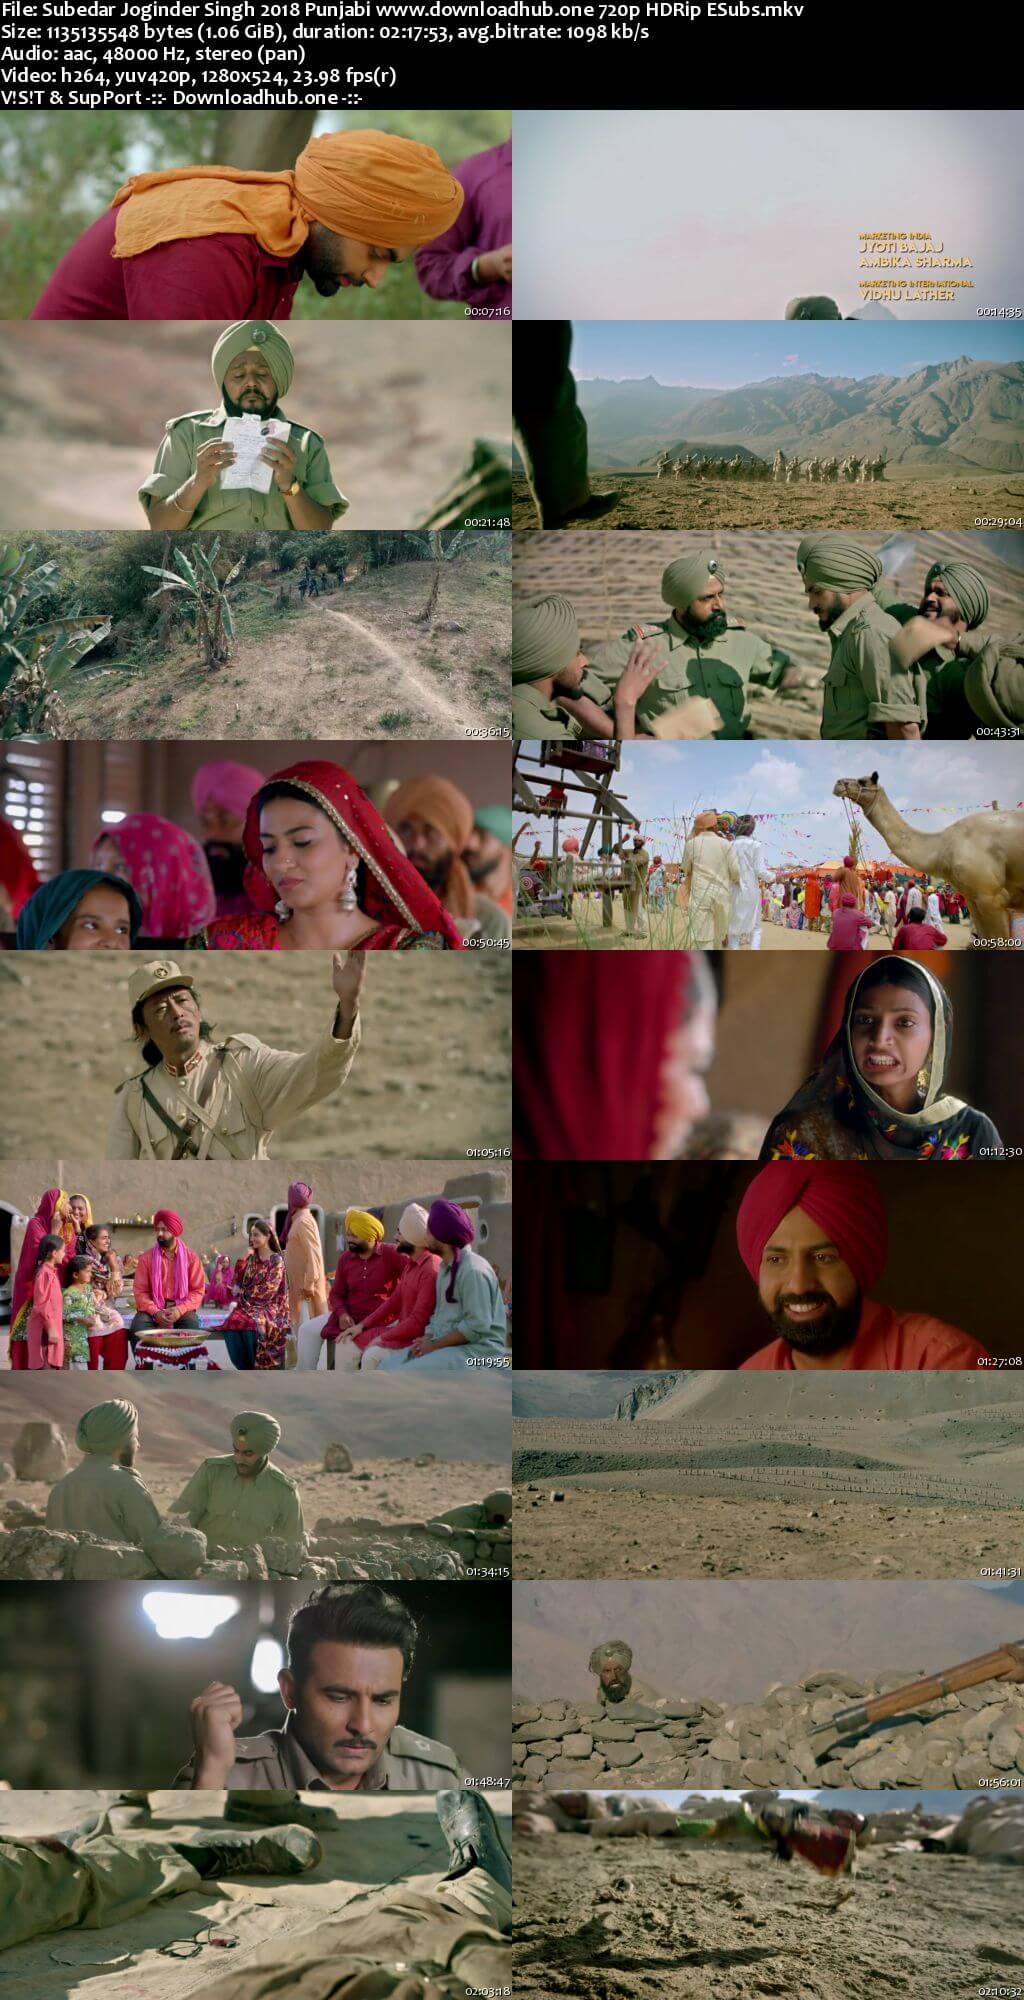 Subedar Joginder Singh 2018 Punjabi 720p HDRip ESubs